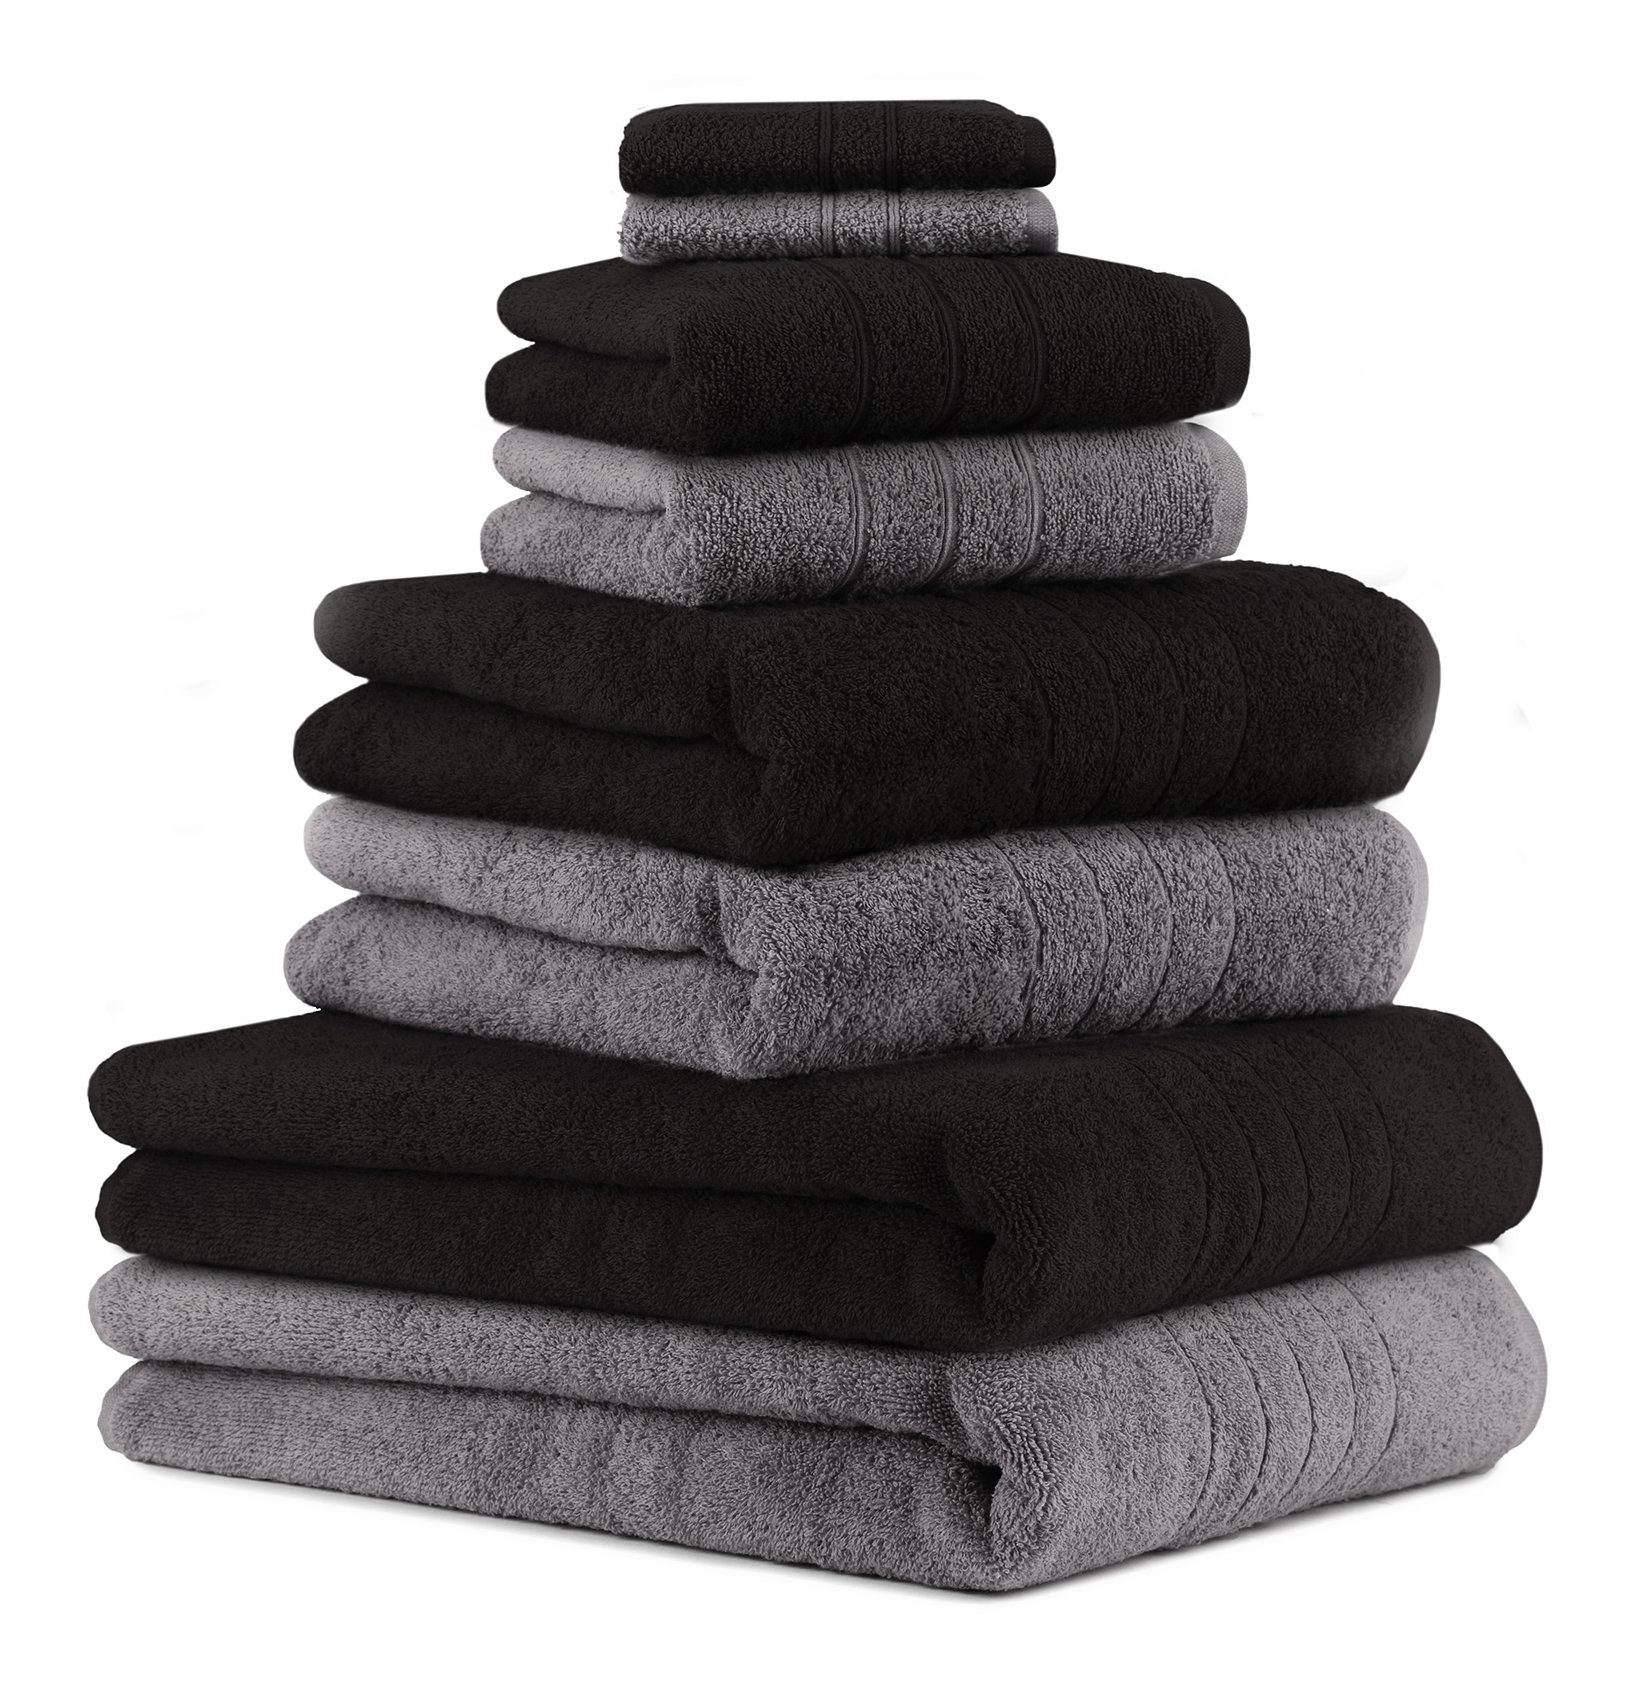 Farbe 2 Baumwolle, schwarz, Badetücher Betz anthrazit 2 Duschtücher Handtuch Baumwolle 100% 2 8-TLG. 2 Handtuch-Set (8-tlg) grau Handtücher Seiftücher und Deluxe Set 100%